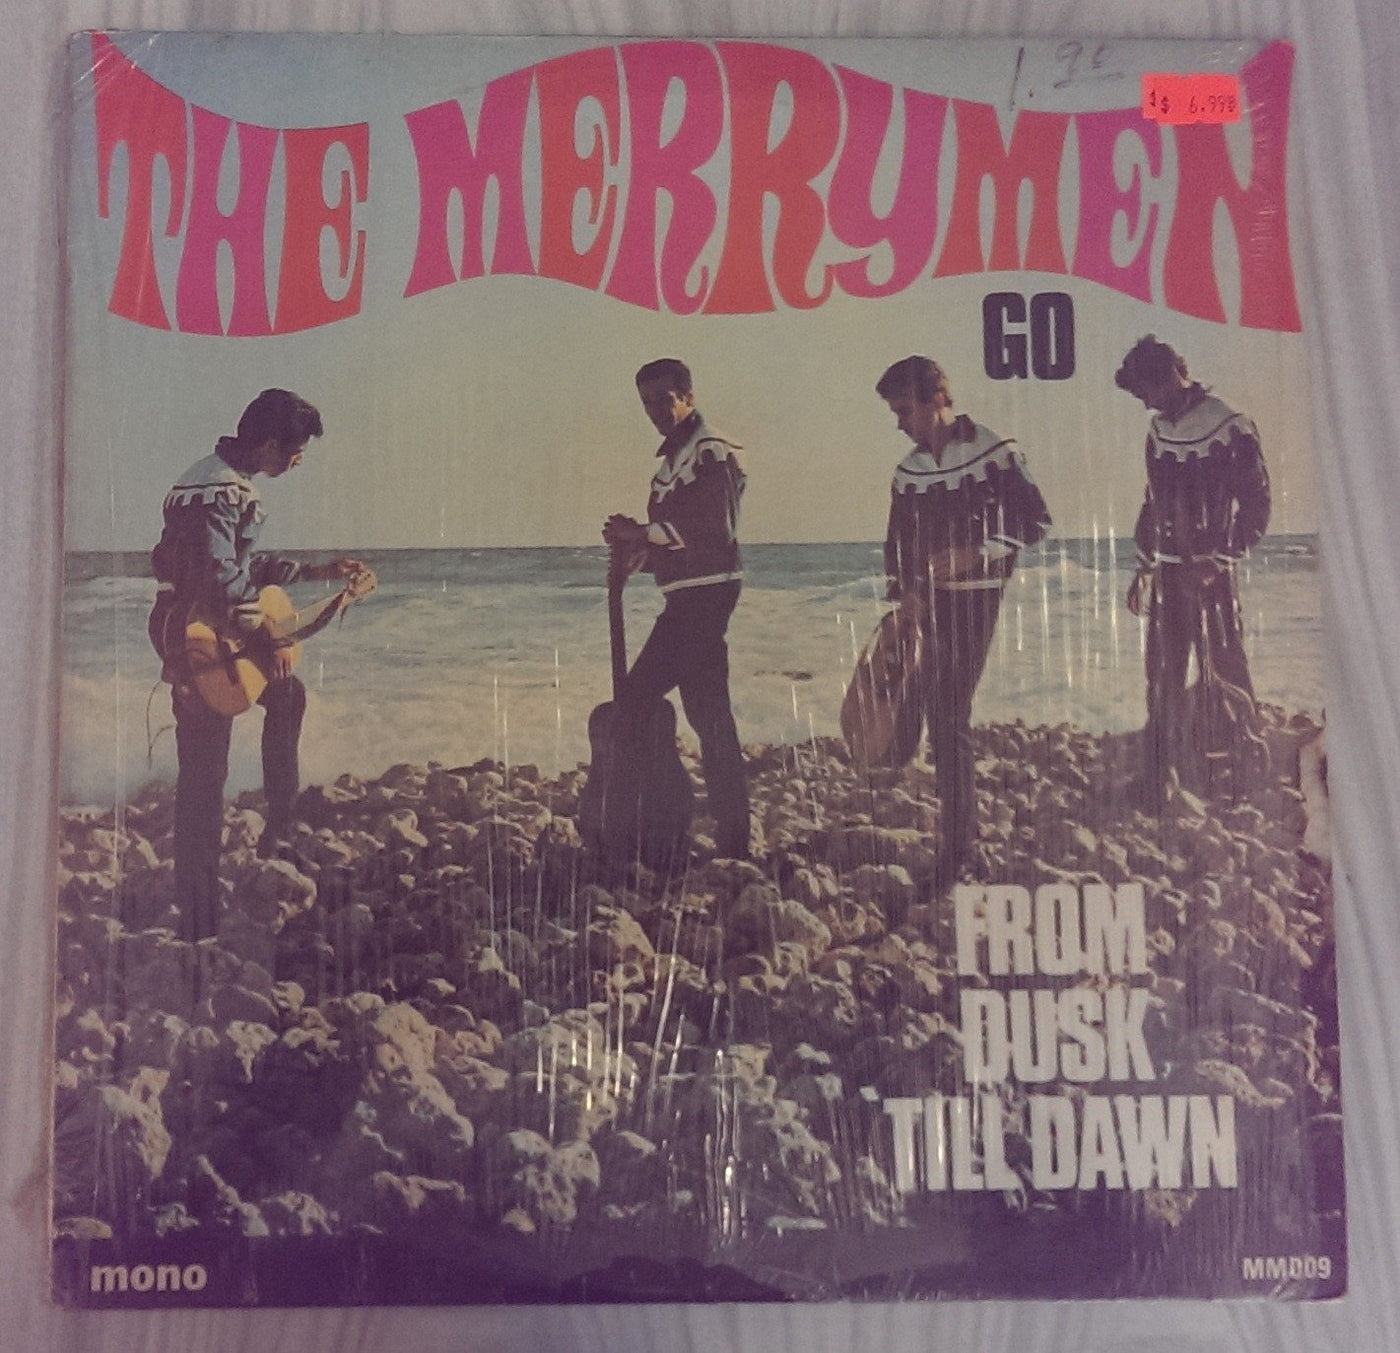 The Merrymen - From Dusk Till Dawn